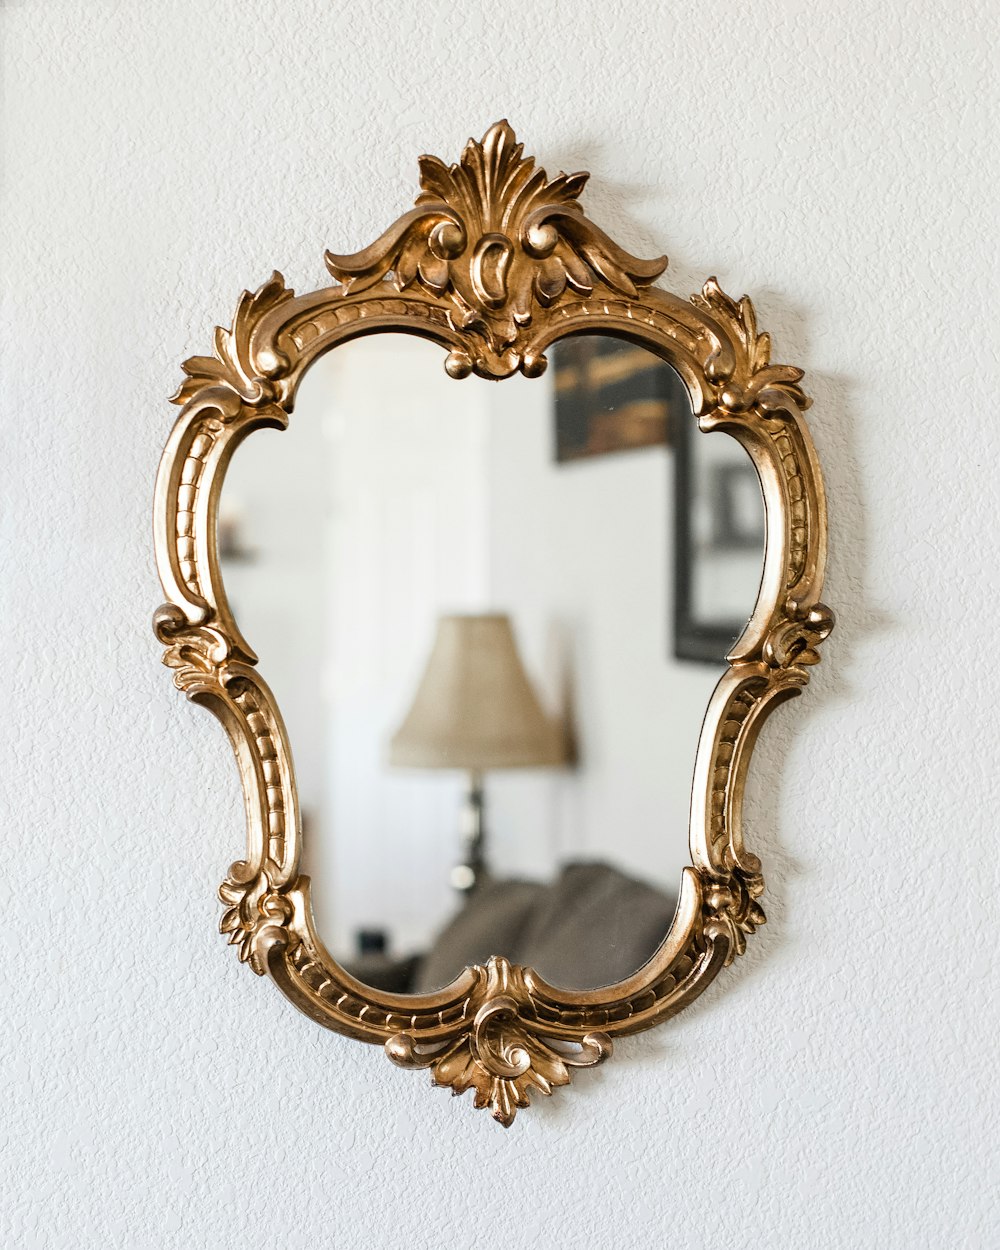 램프 옆 벽에 걸려 있는 거울